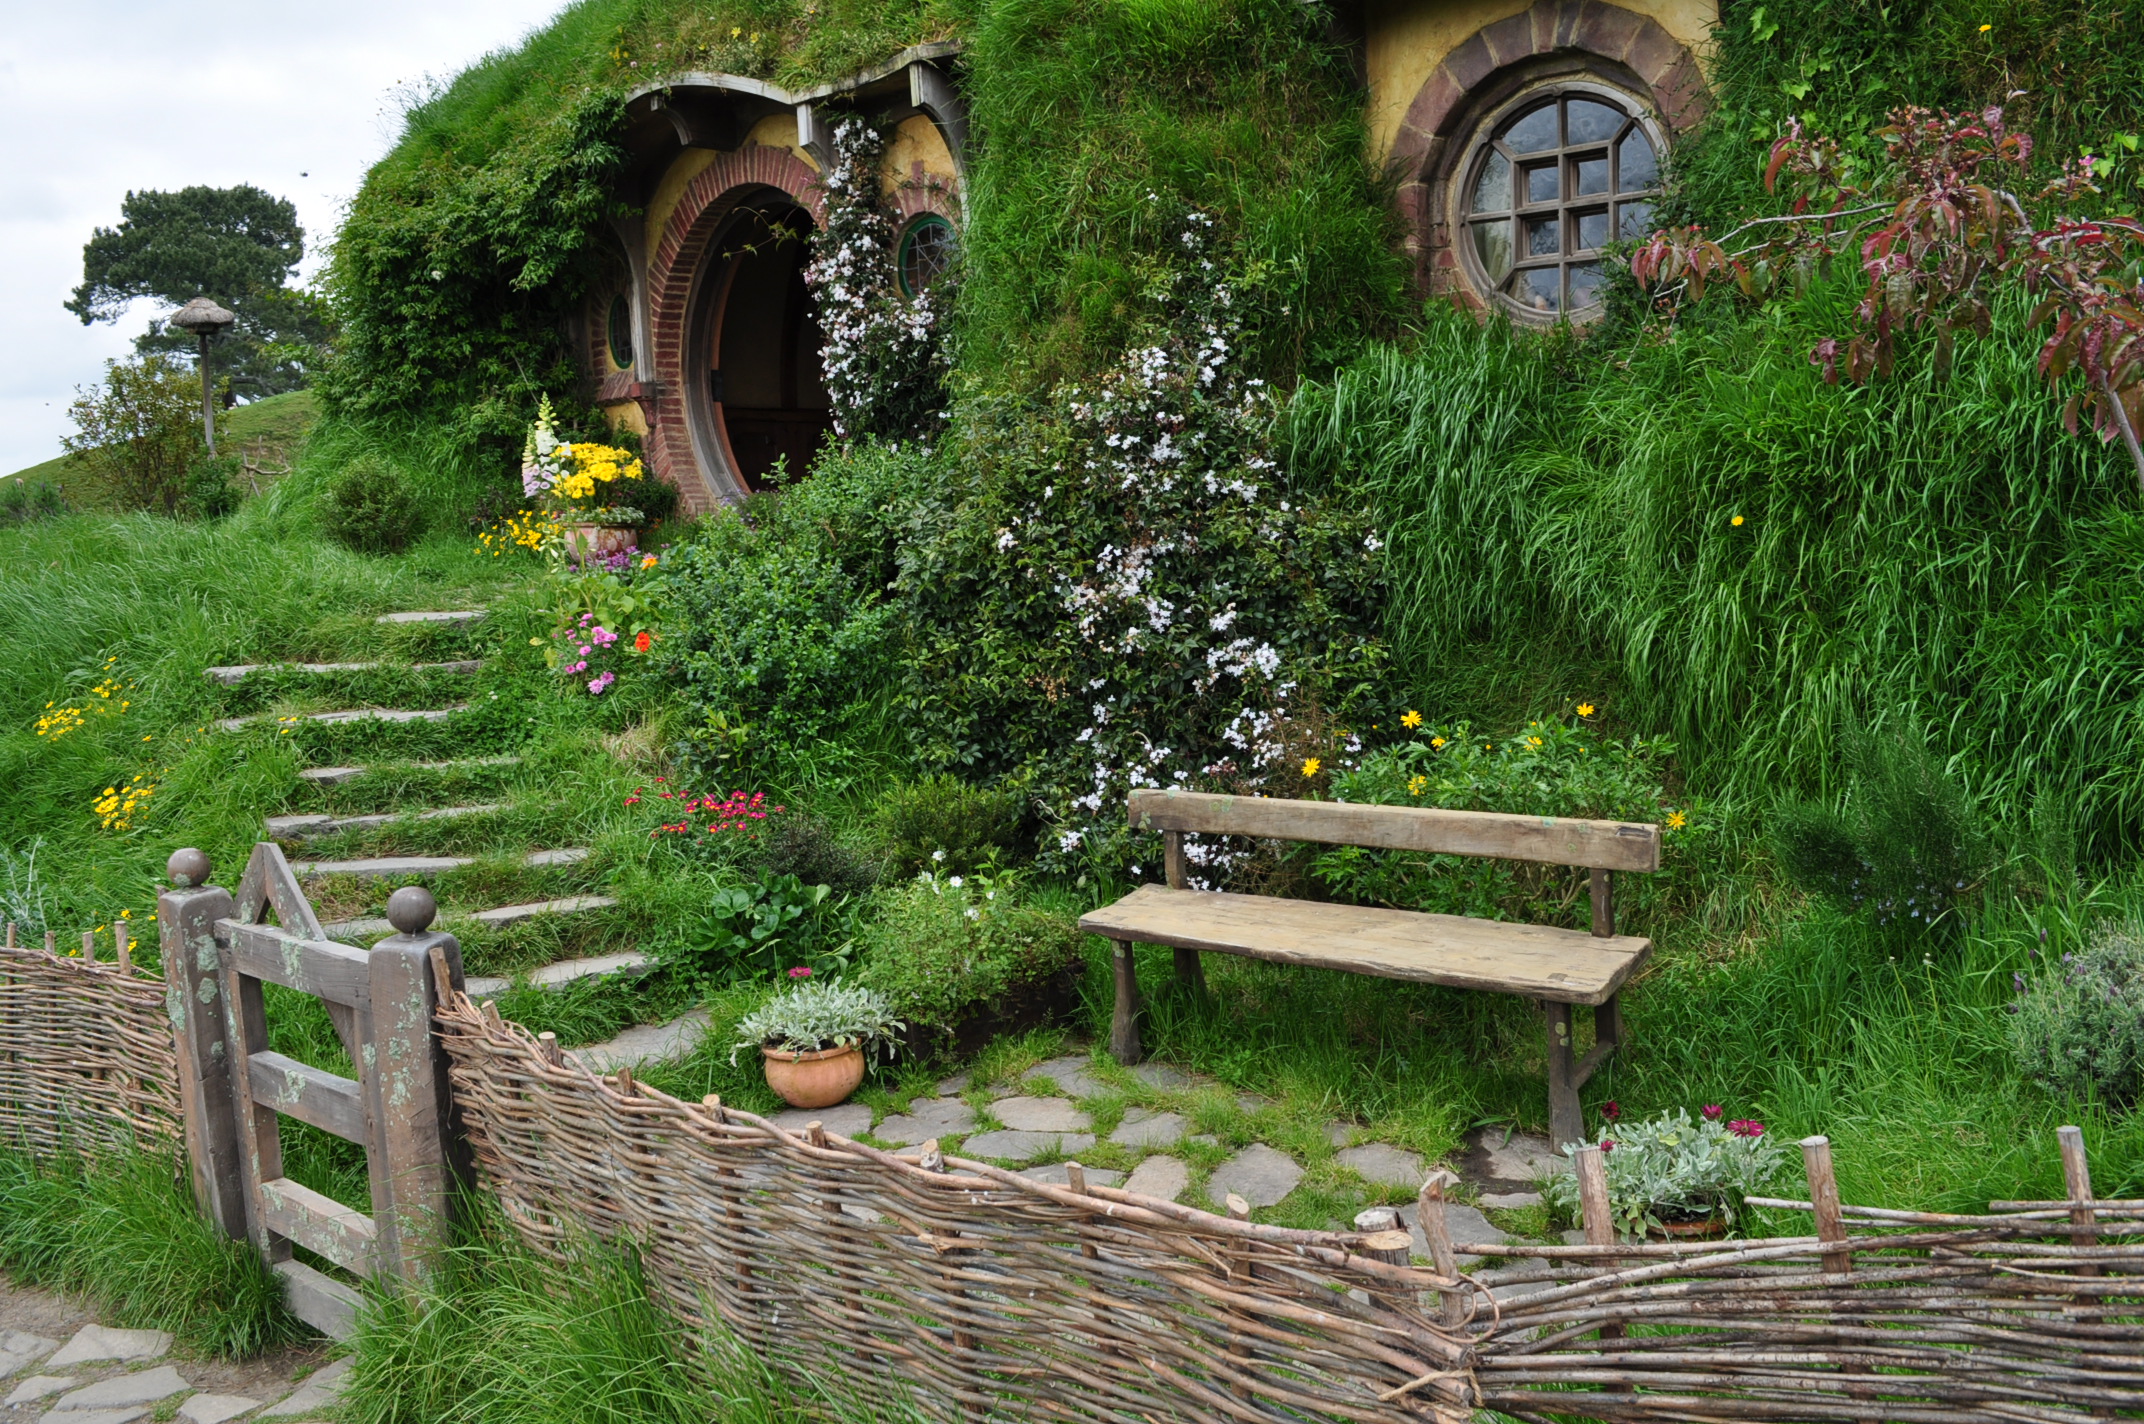 Noua Zeelanda - The Hobbit